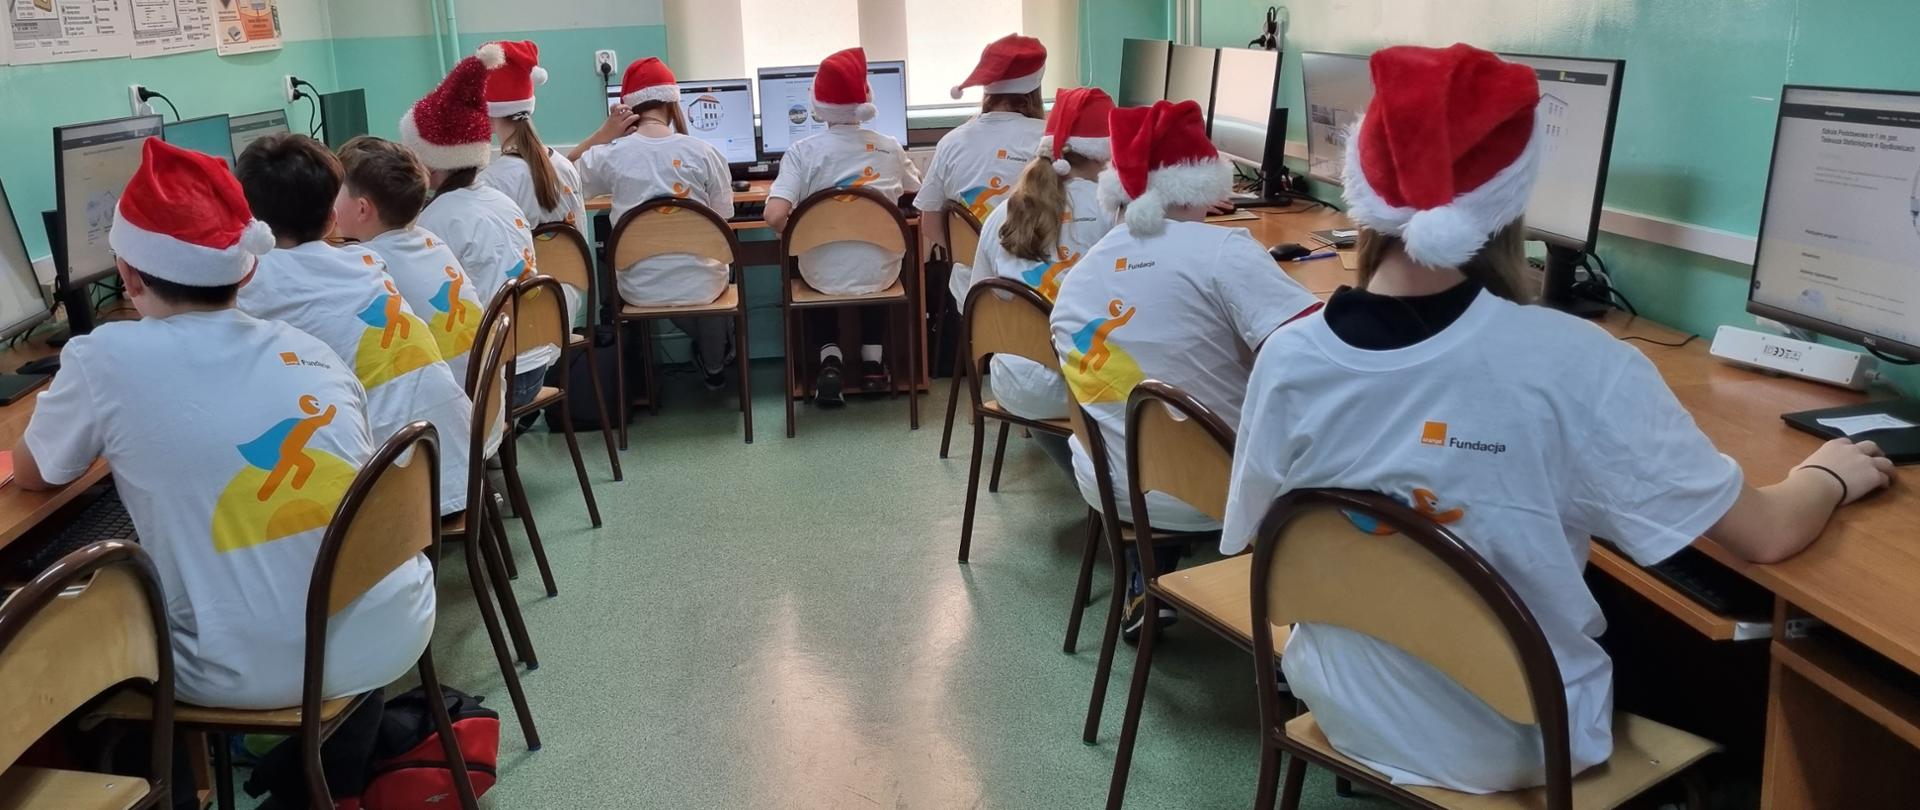 Uczniowie odwróceni tyłem do obiektywu w białych koszulkach z logo i nadrukiem #Superkoderzy, na głowie czerwone czapki Mikołaja wpatrzeni w monitor komputerów na których realizują zadania projektowe.